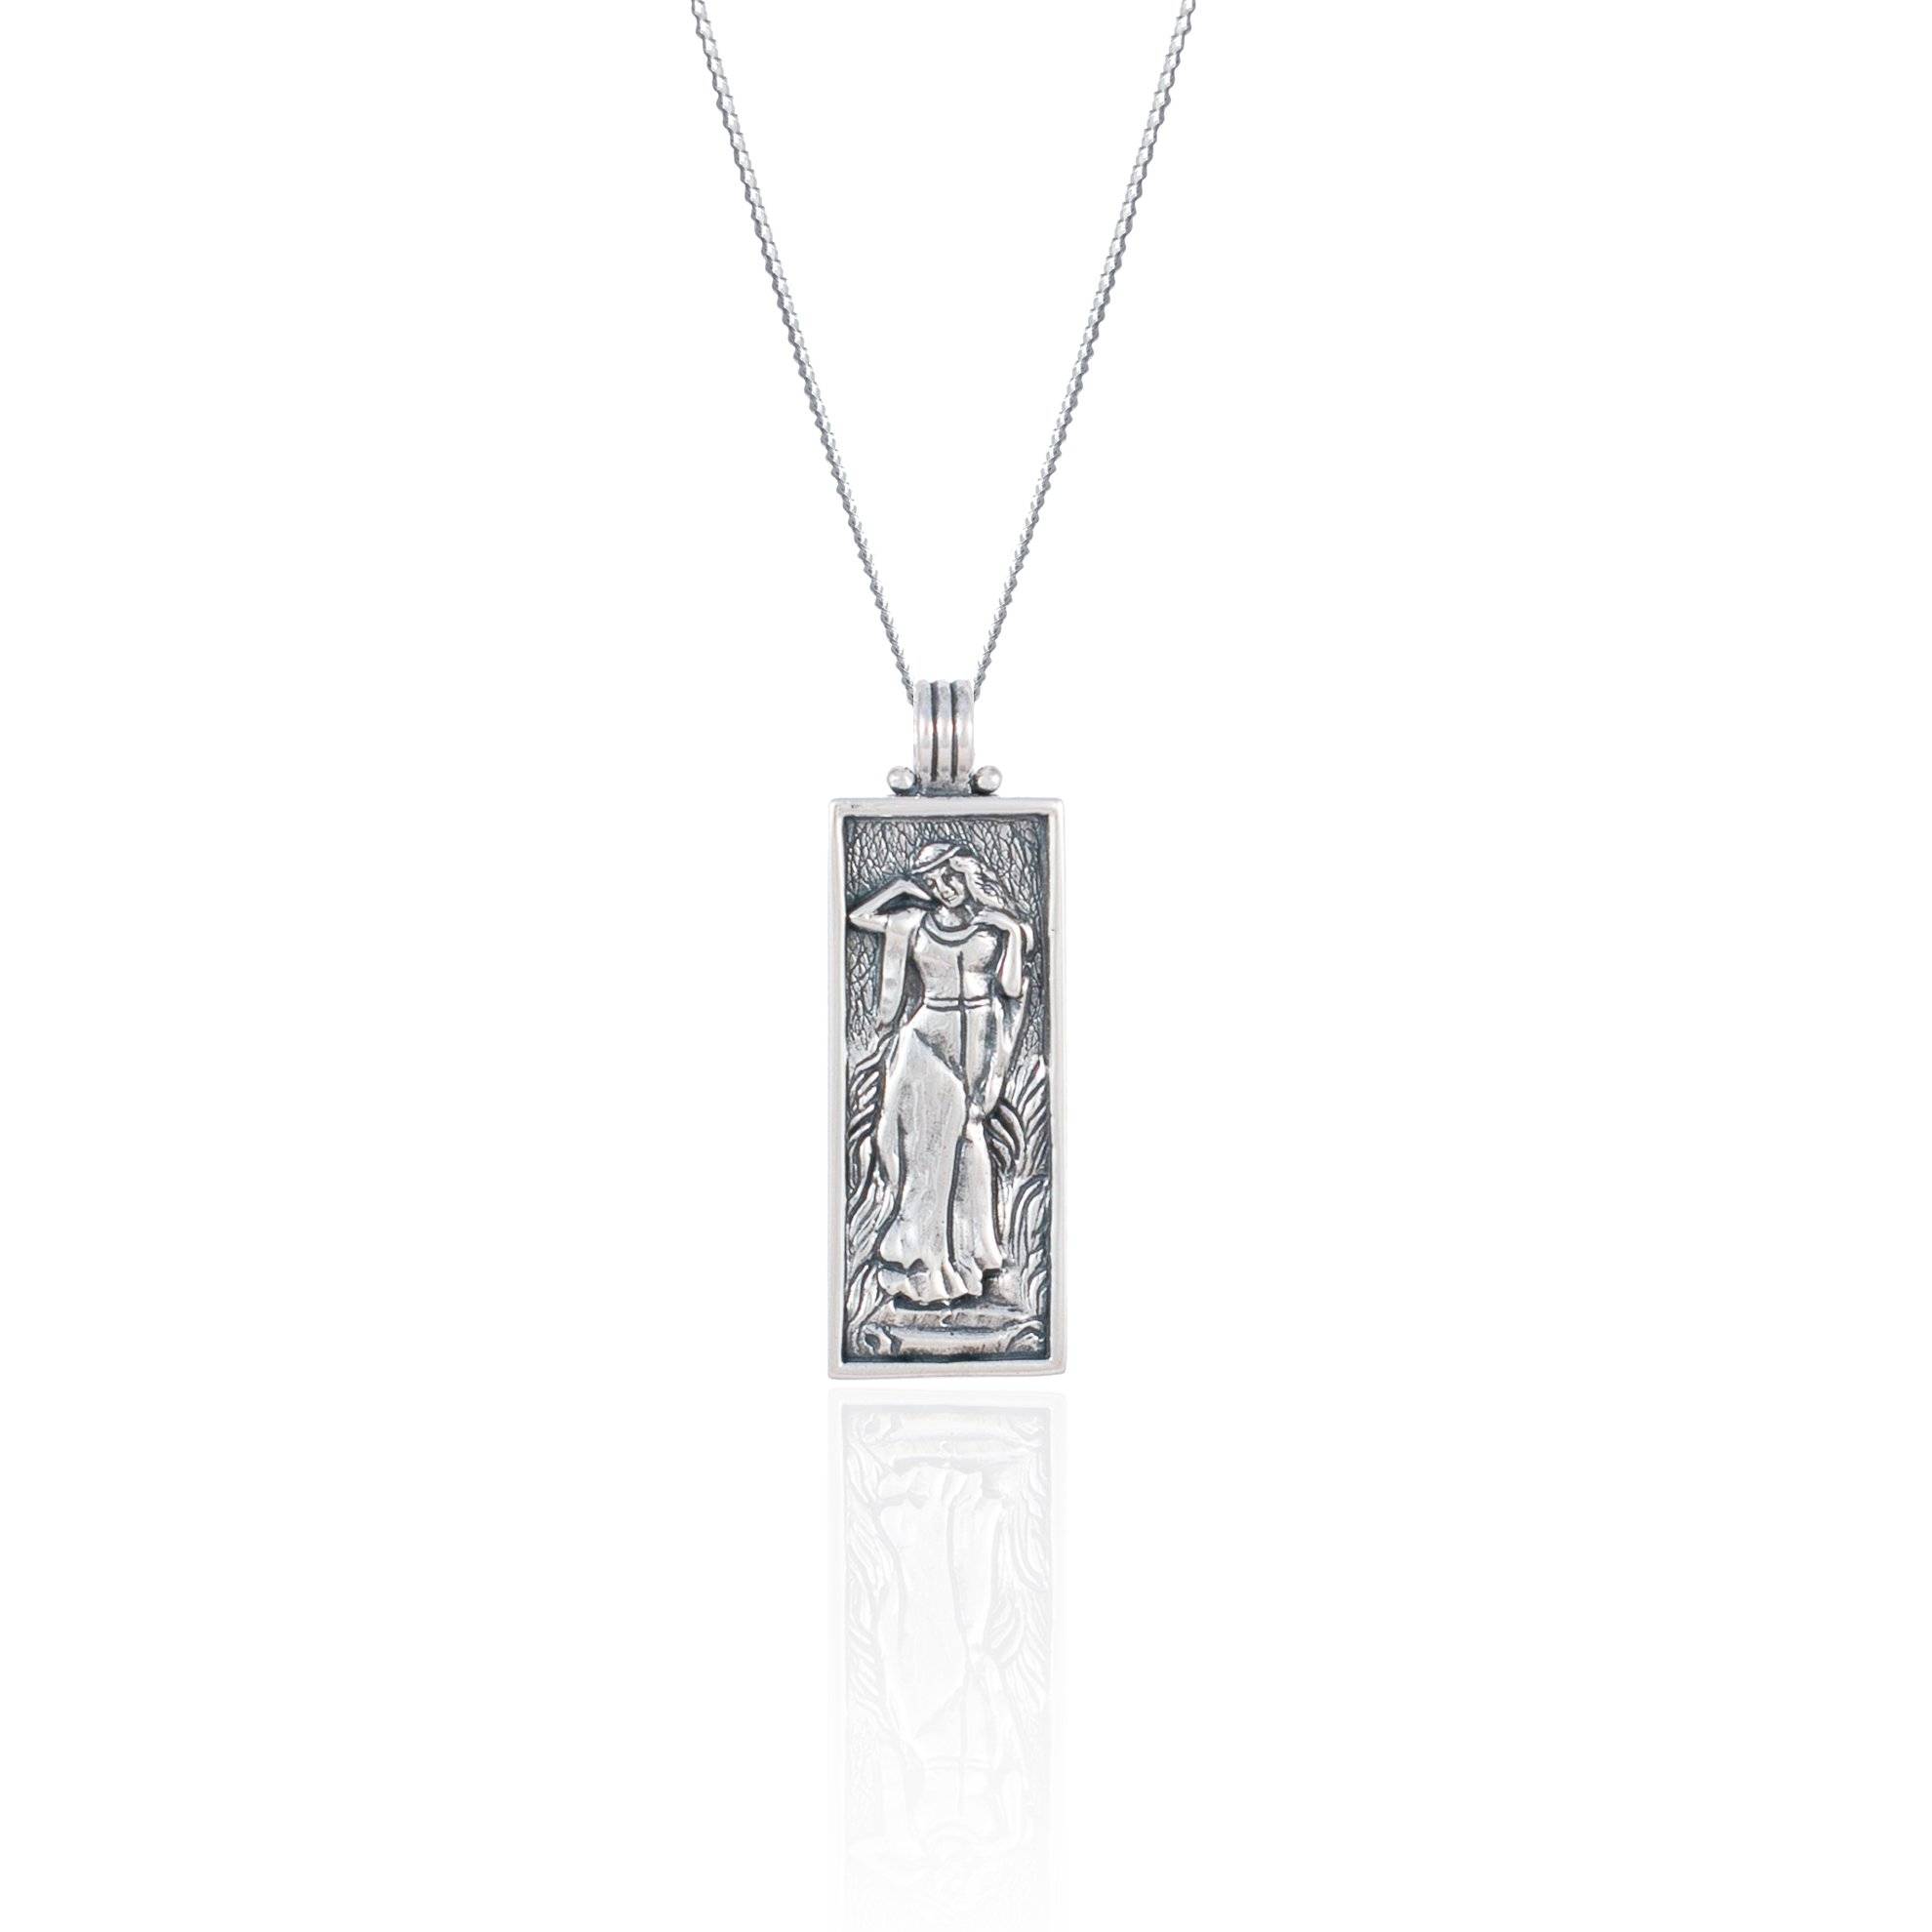 Freyja Halskette Silber - Liebe, & Anhänger der Schönheit Fruchtbarkeit Göttin